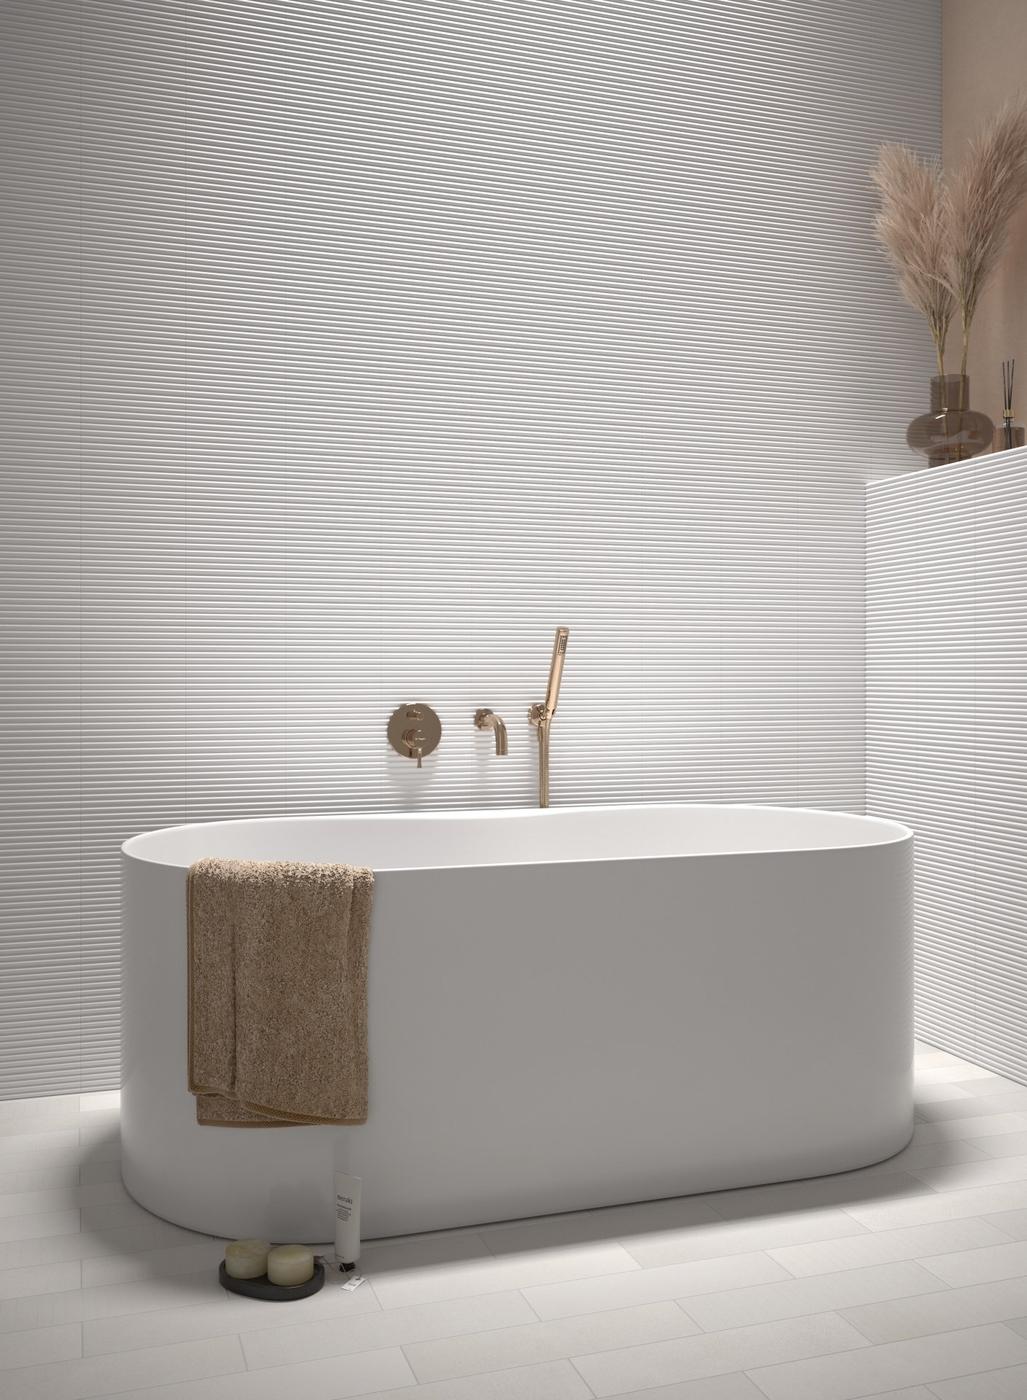 Carrelage uni blanc sans motifs dans une salle de bain épurée avec des touches de couleur beige et accessoires de bain